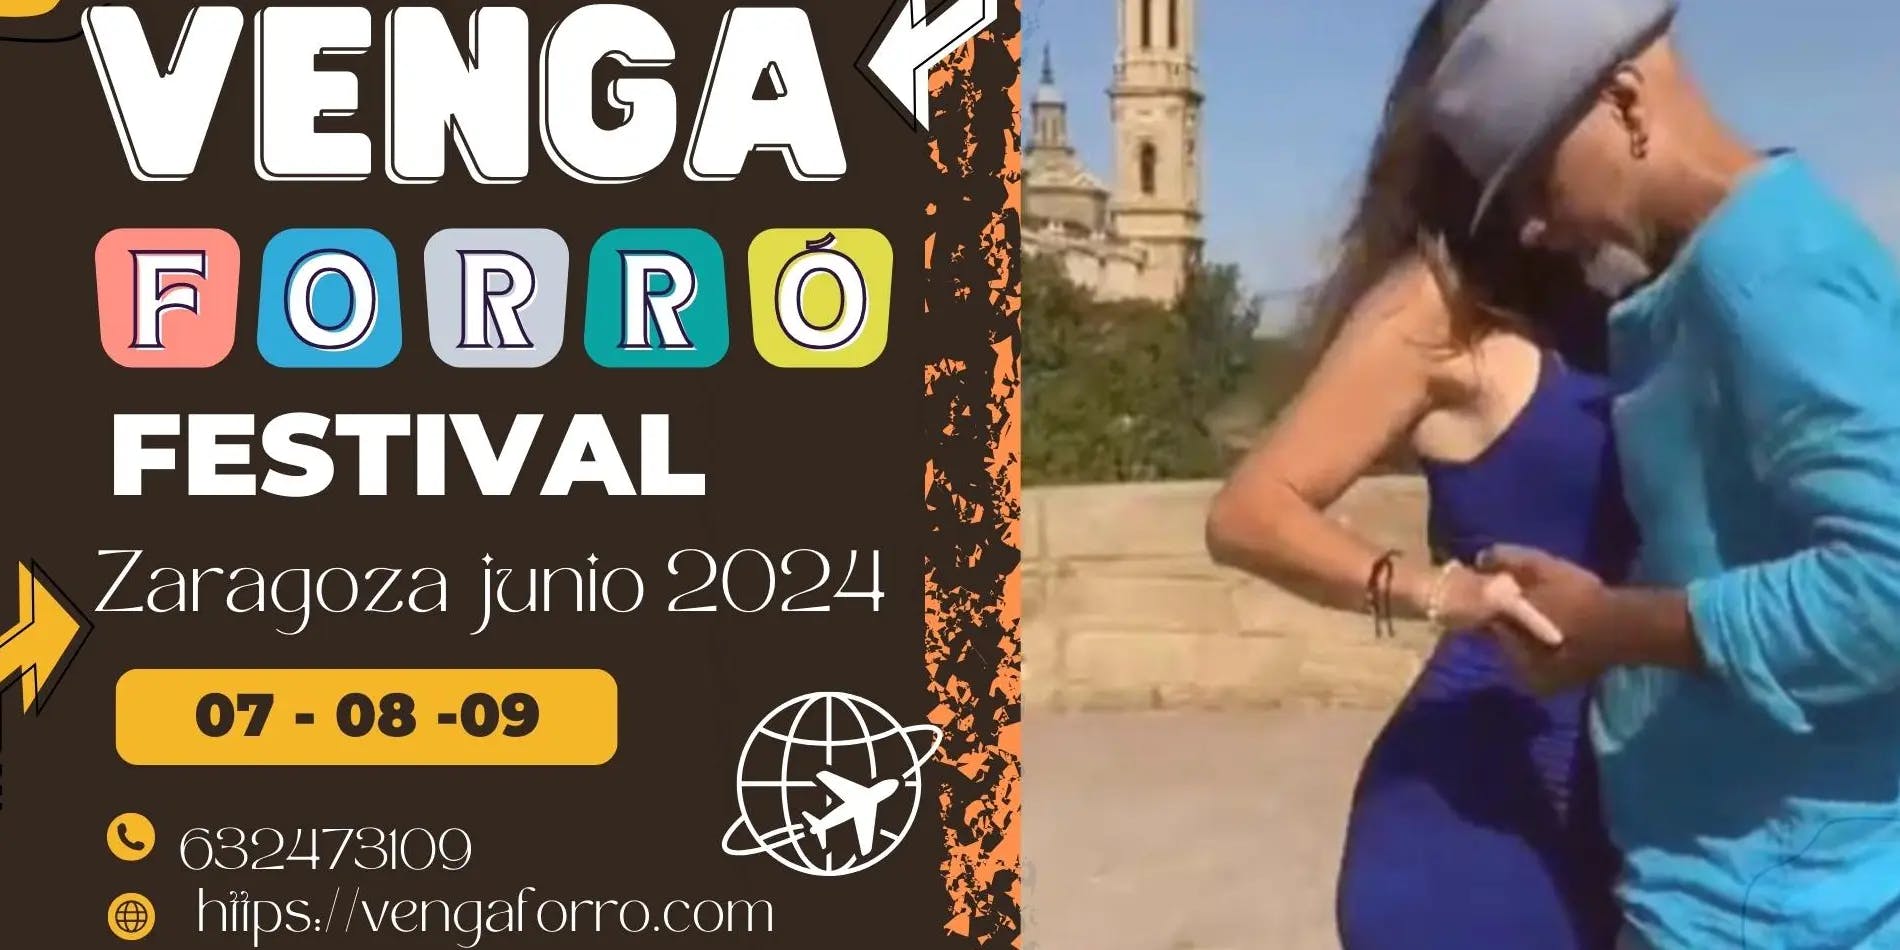 VengaForró festival Zaragoza 2024